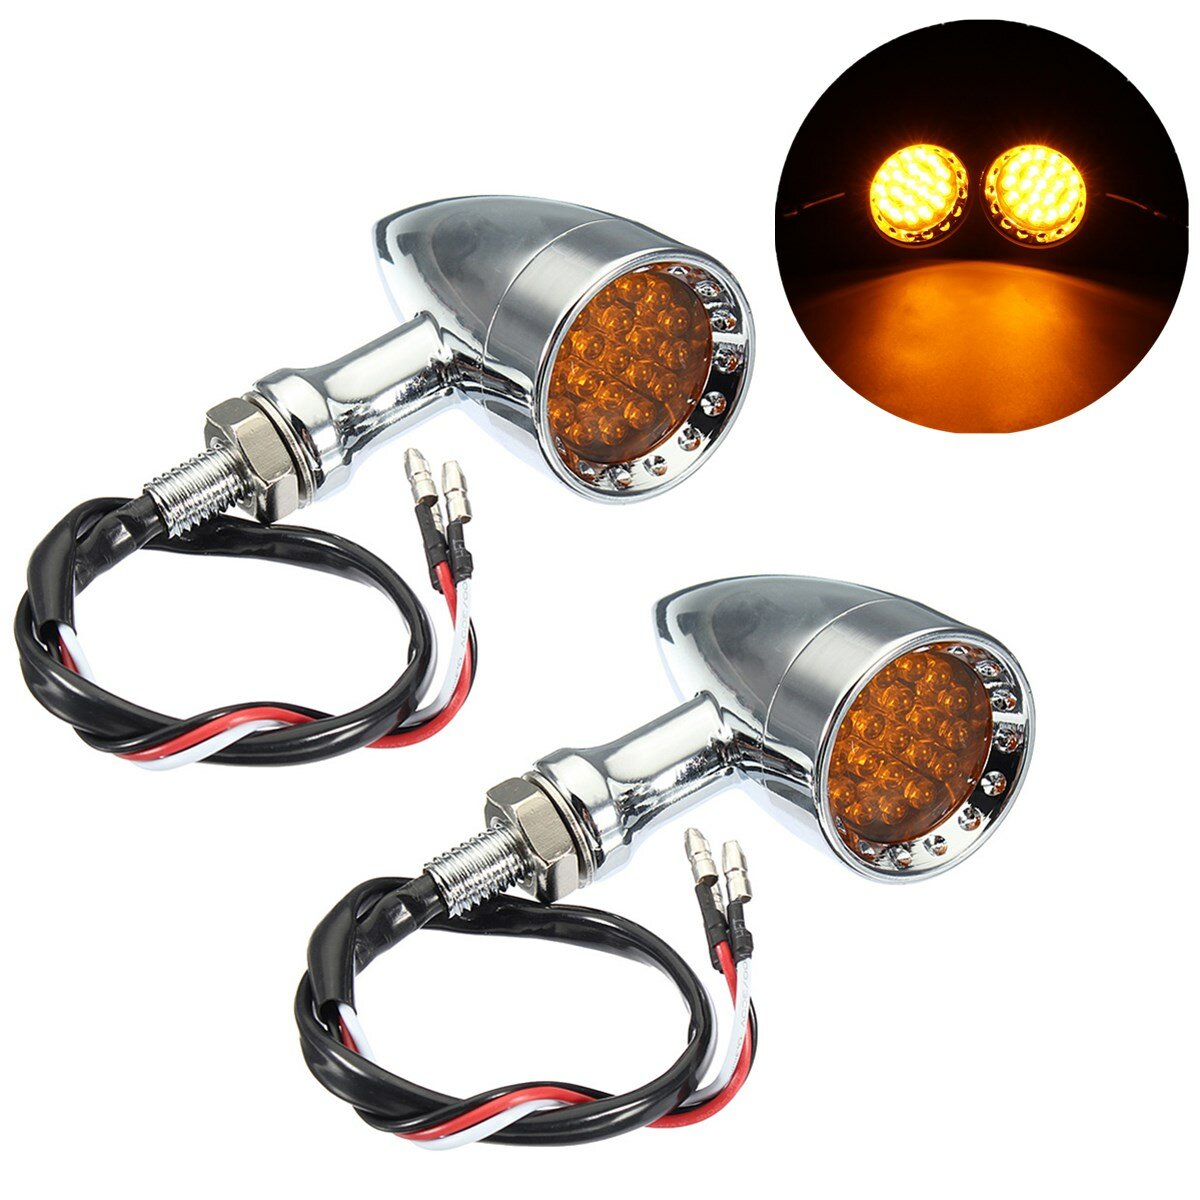 2X Motorcycle 20LED Amber Light Turn Signal Bullet Indicator Blinker Lamp 12V US